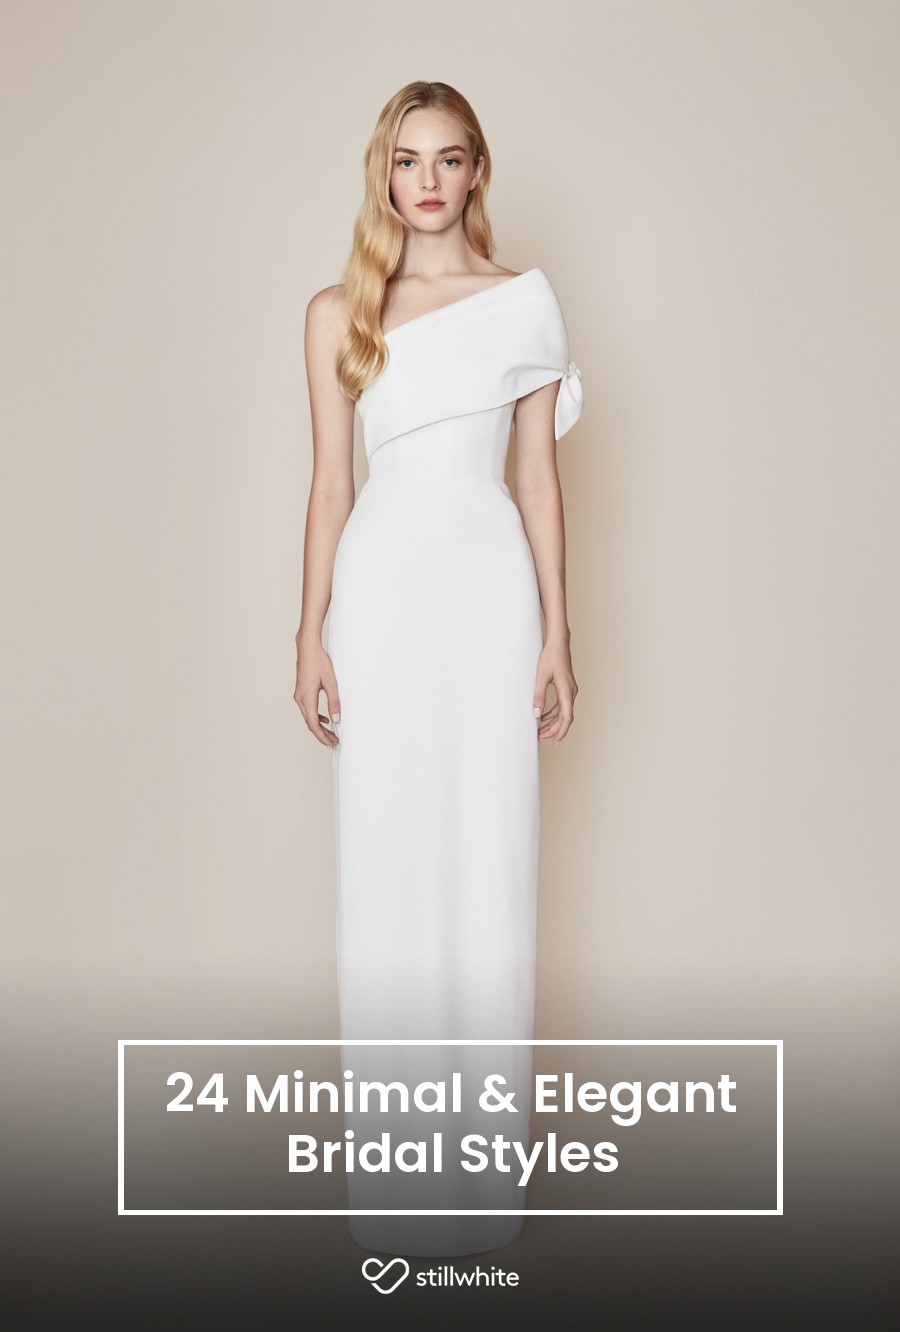 24 Minimal & Elegant Bridal Styles – Stillwhite Blog